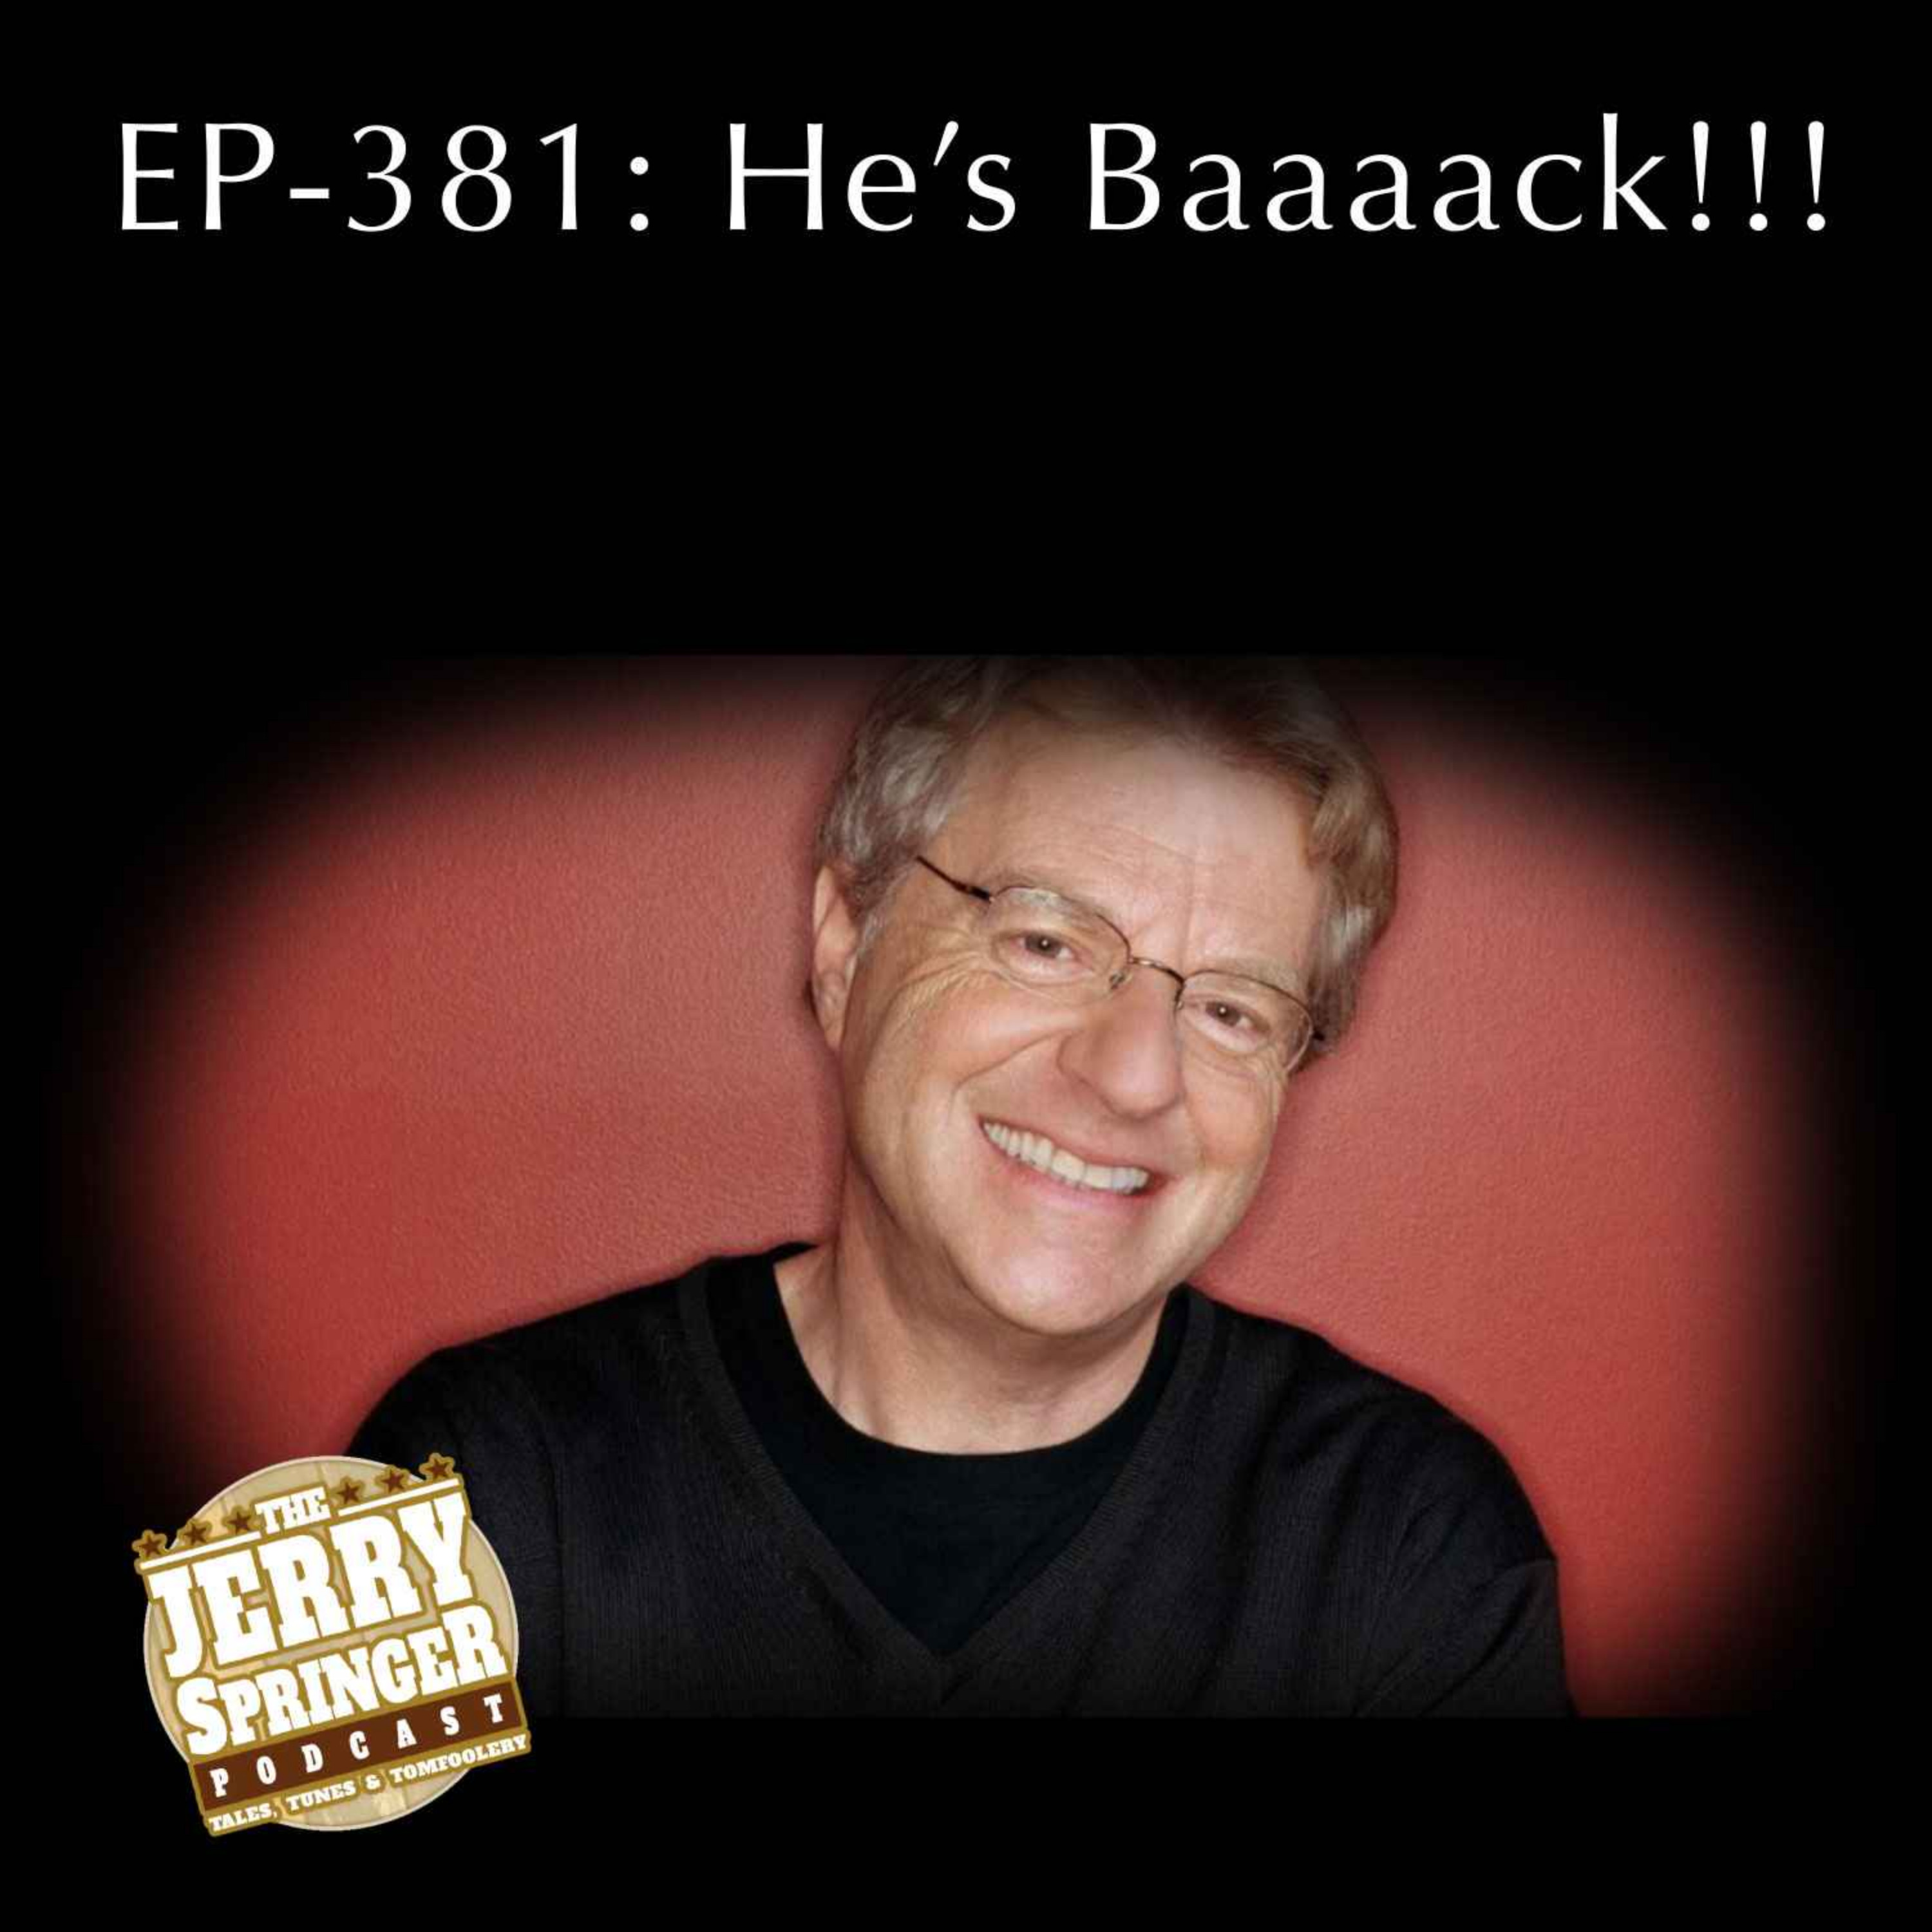 He's Baaaaack! EP -381